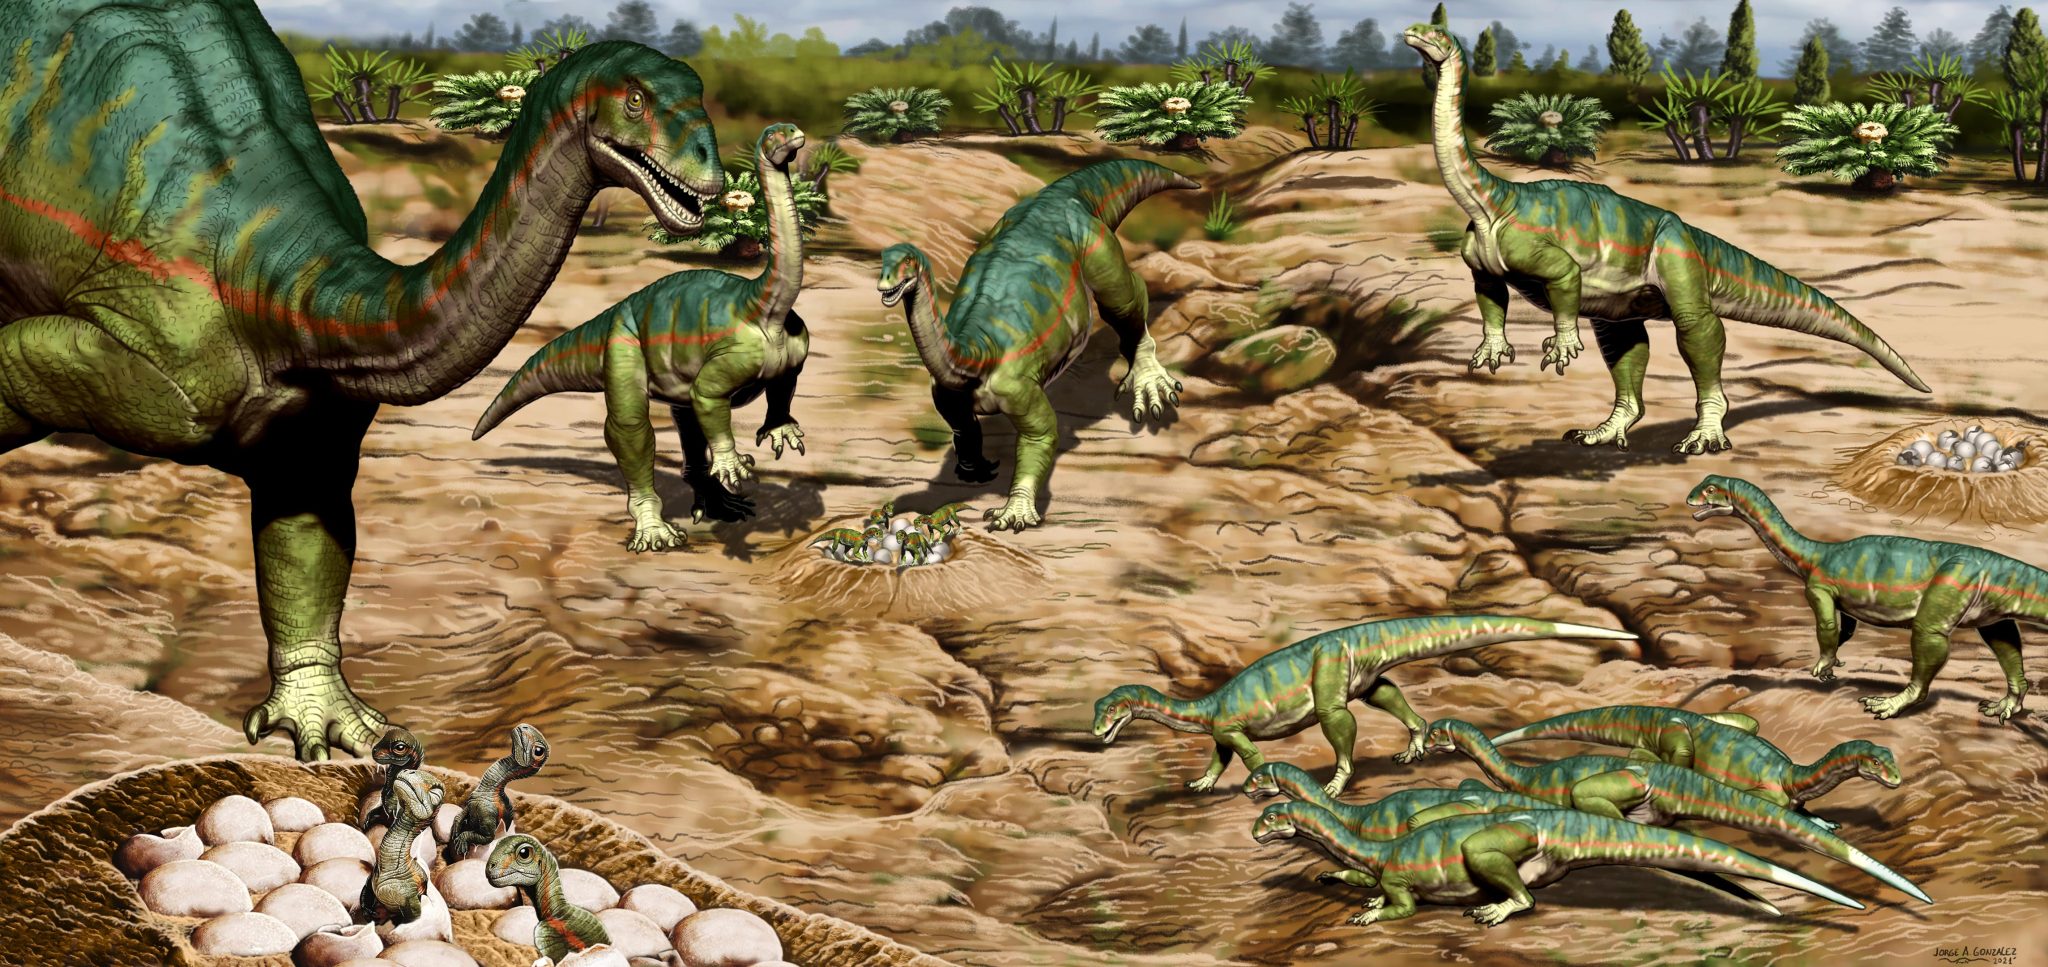 最新研究显示早在1.93亿年前恐龙就有复杂的群居行为